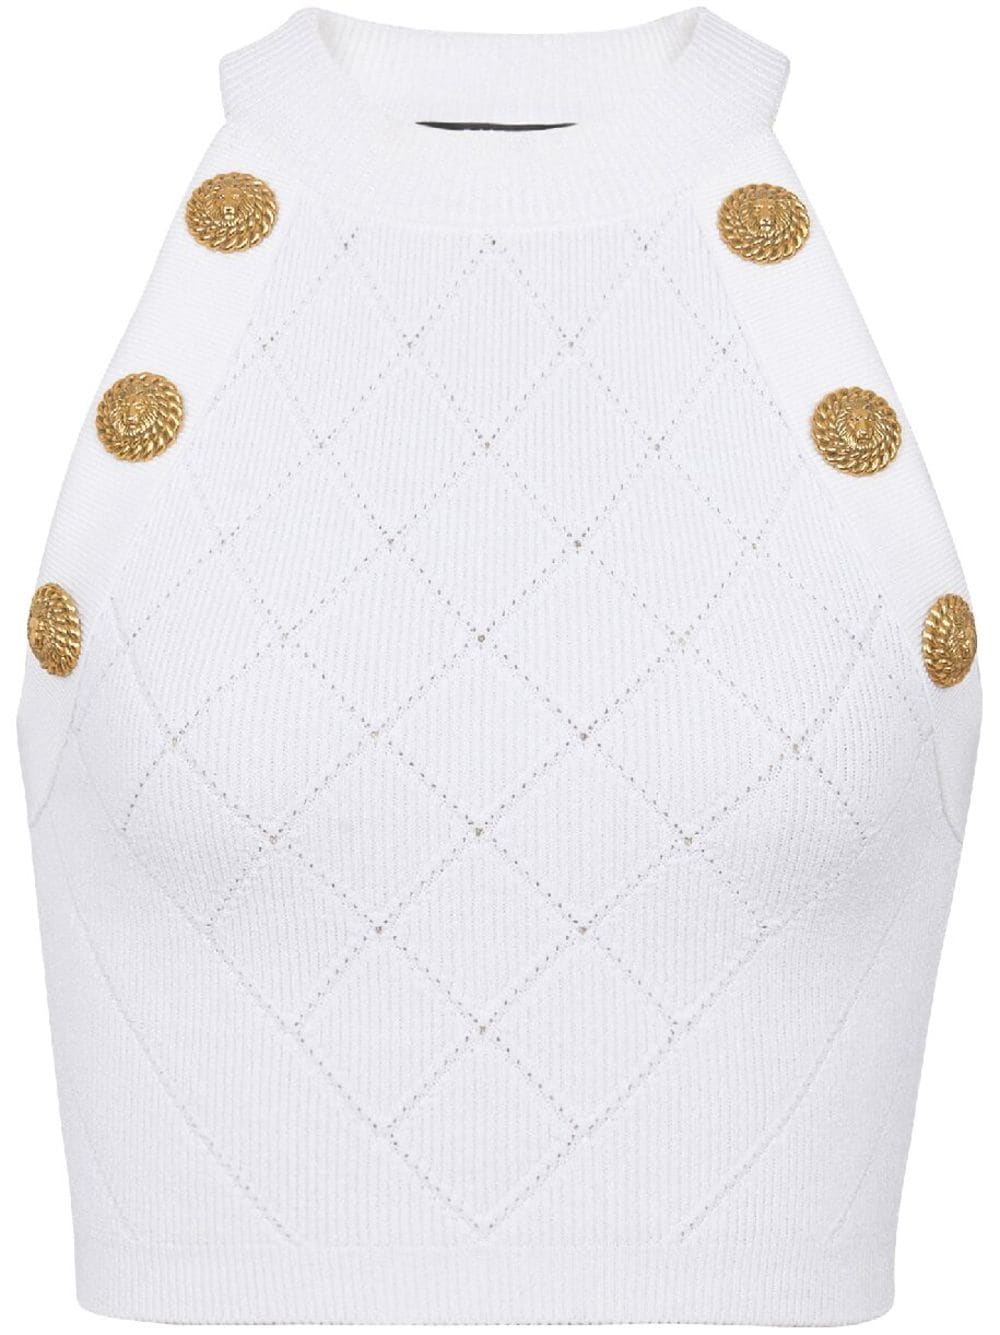 Áo Crop Knit Trắng Với Nút Vàng và Chất Liệu Bền Vững - SS24